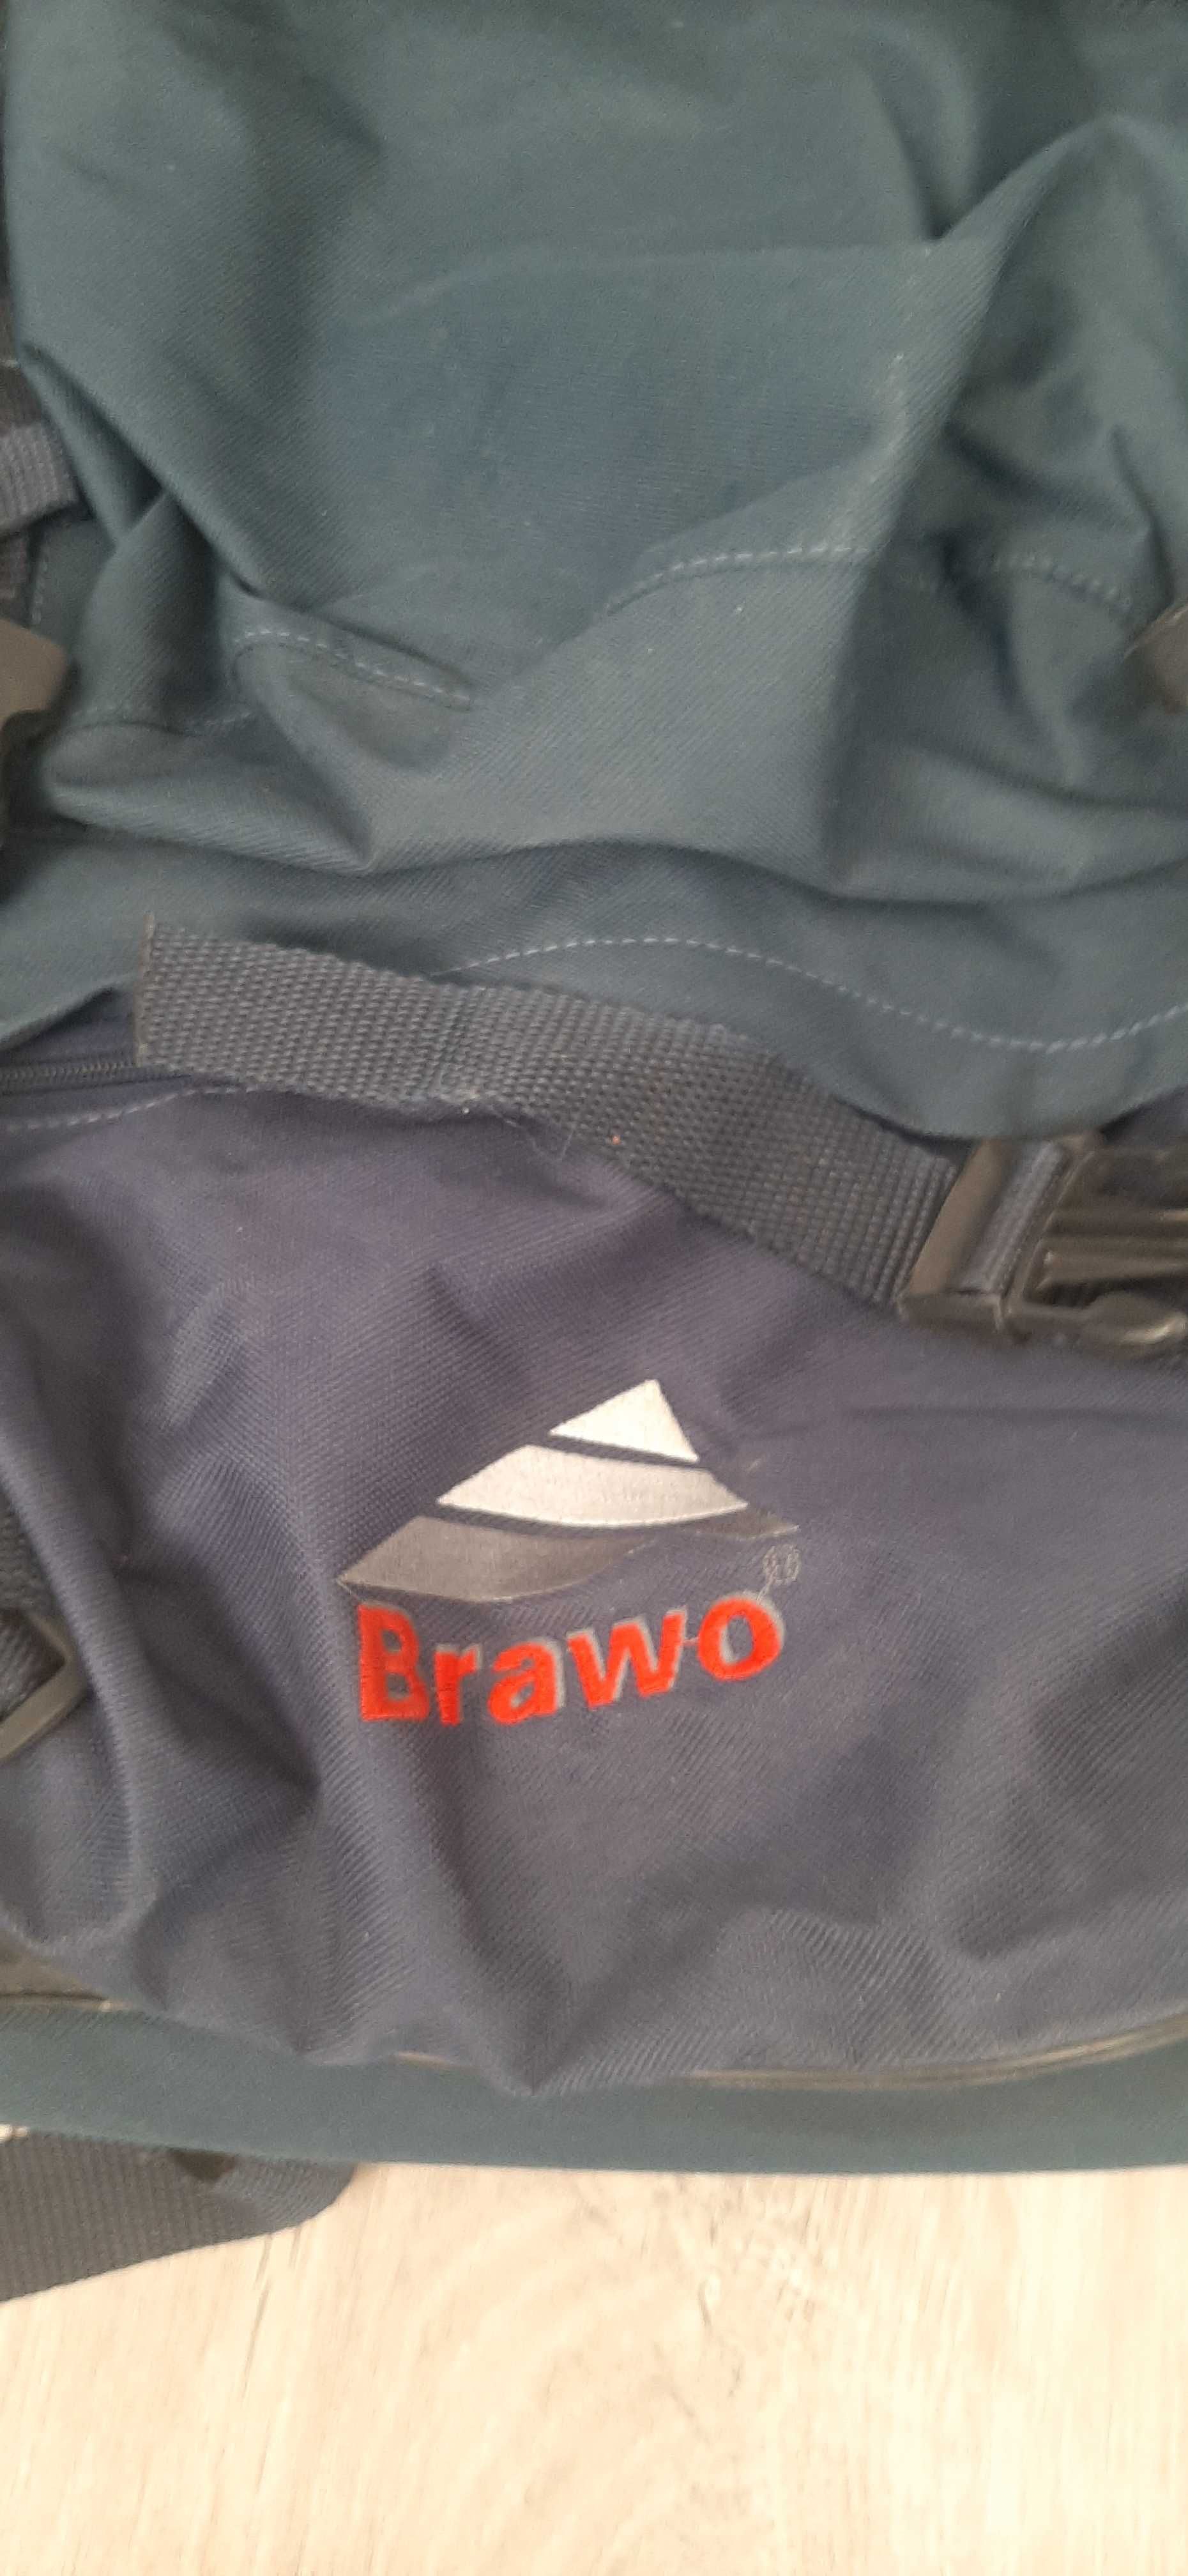 Plecak Turystyczny "BRAWO"